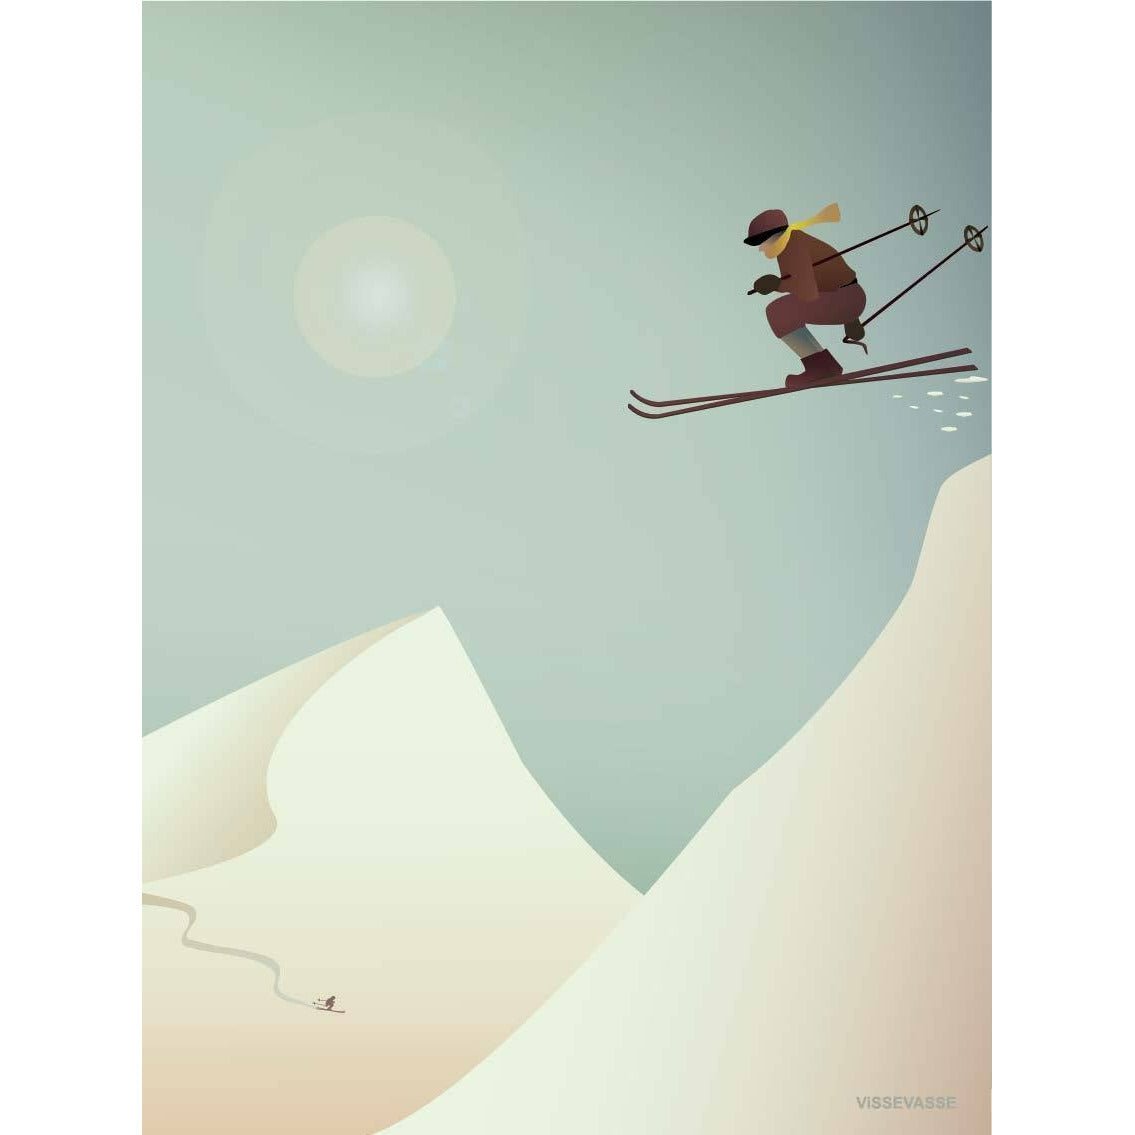 Póster de esquí de Vissevasse, 30 x40 cm